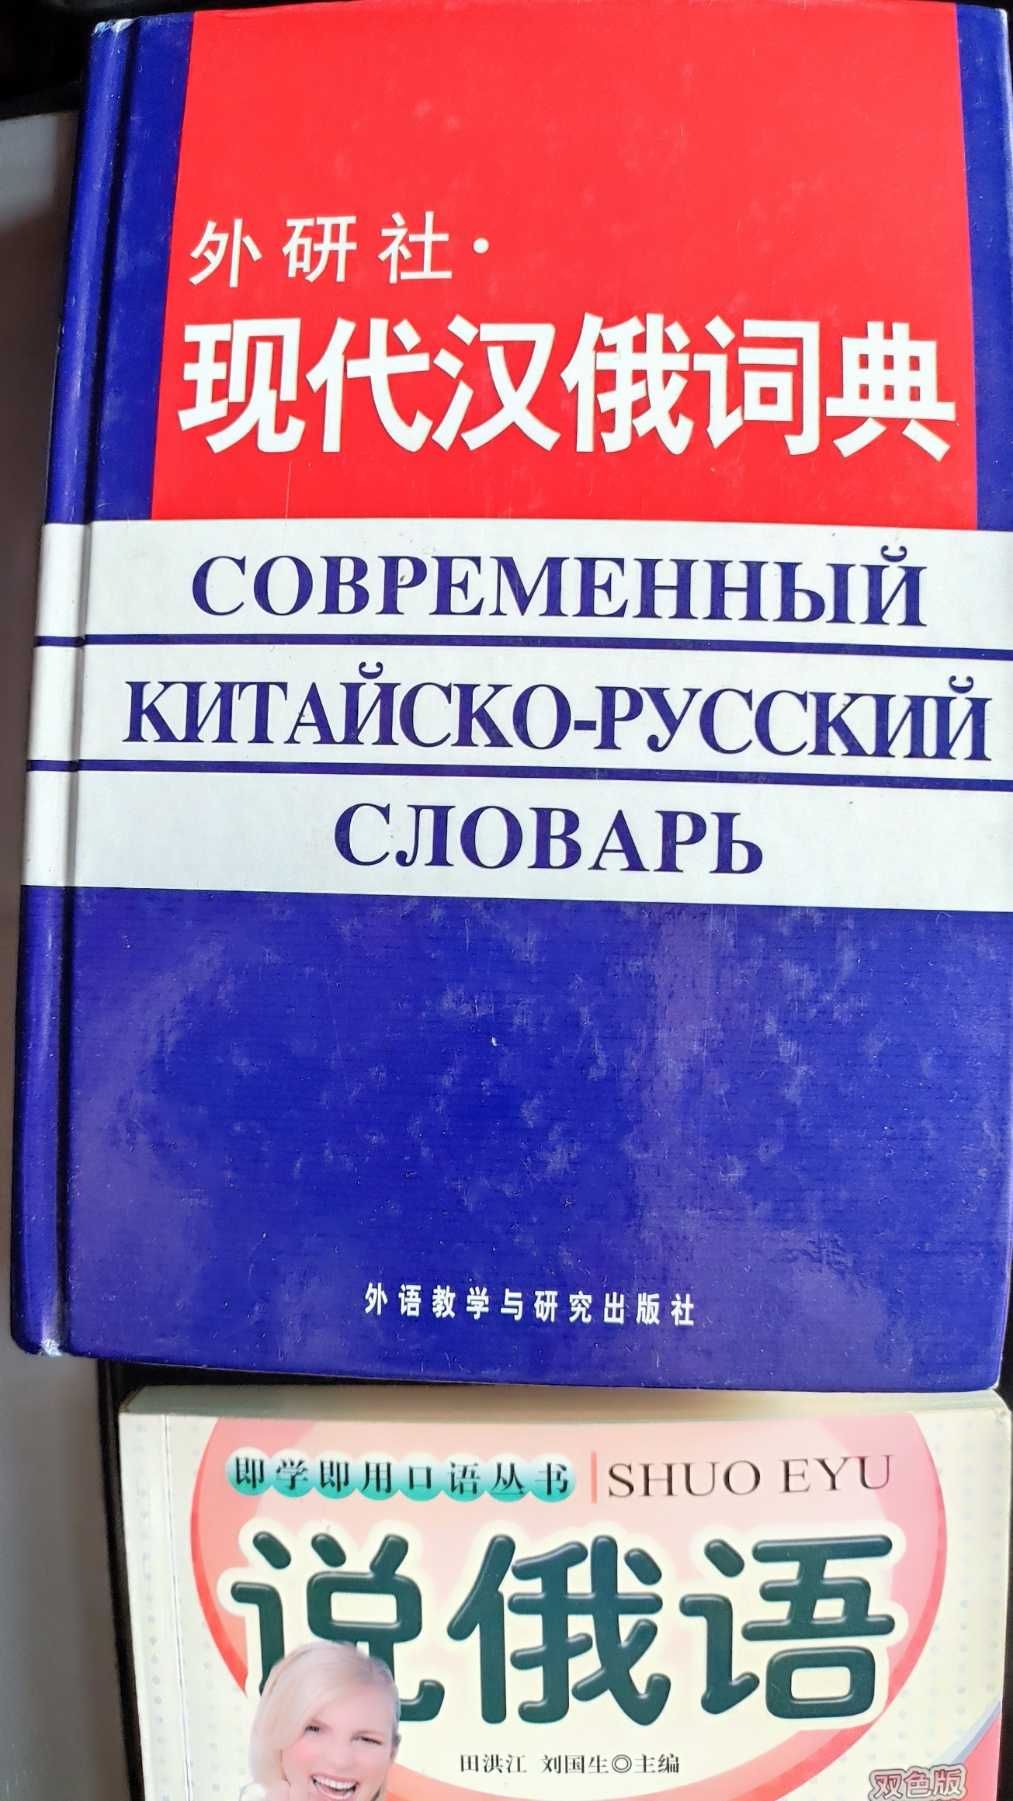 Китайско русский словарь, разговорник, учебник . Цена за все сразу